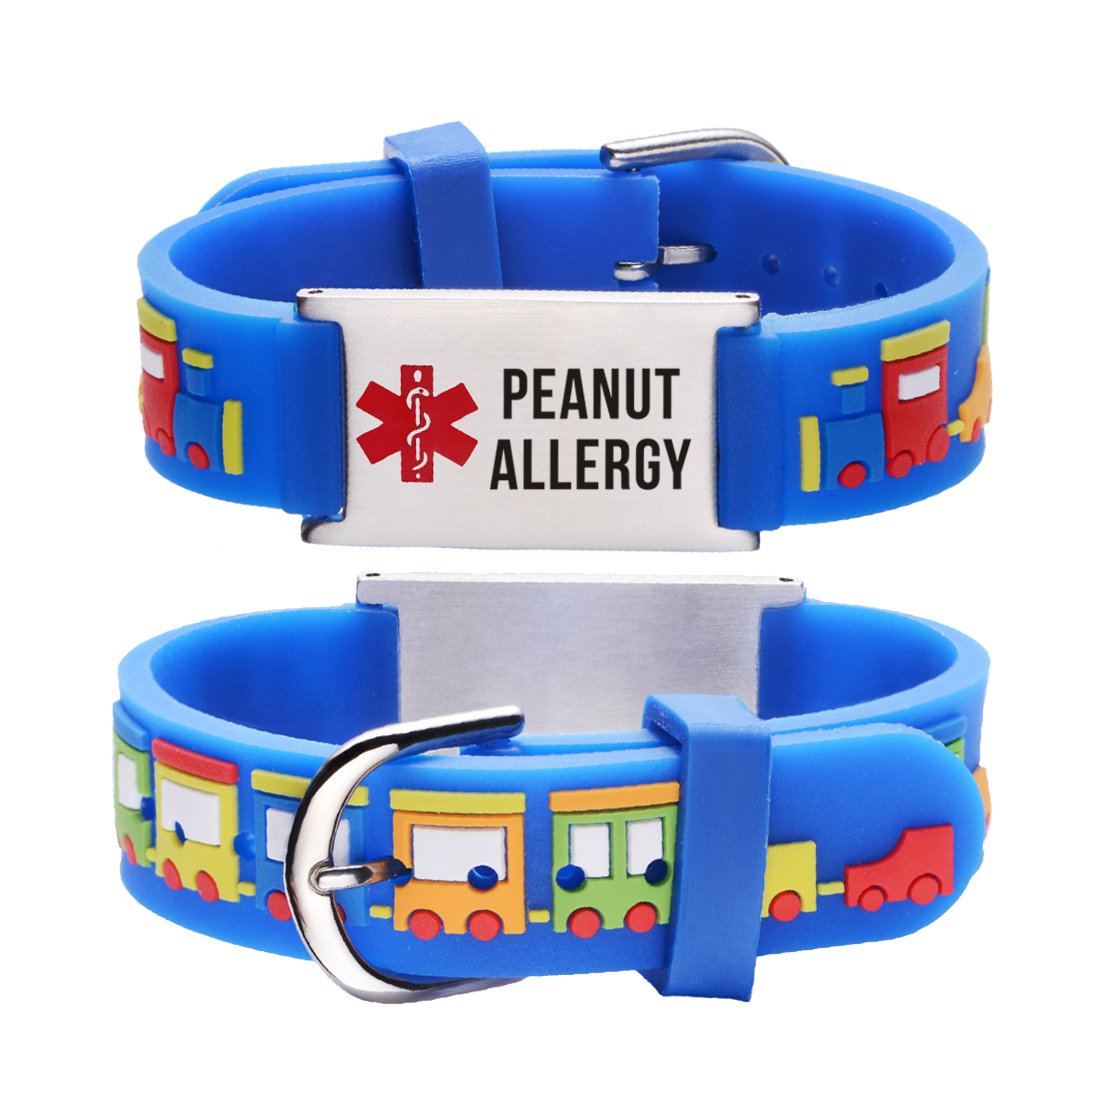 Peanut Allergy bracelets for kids-Small train